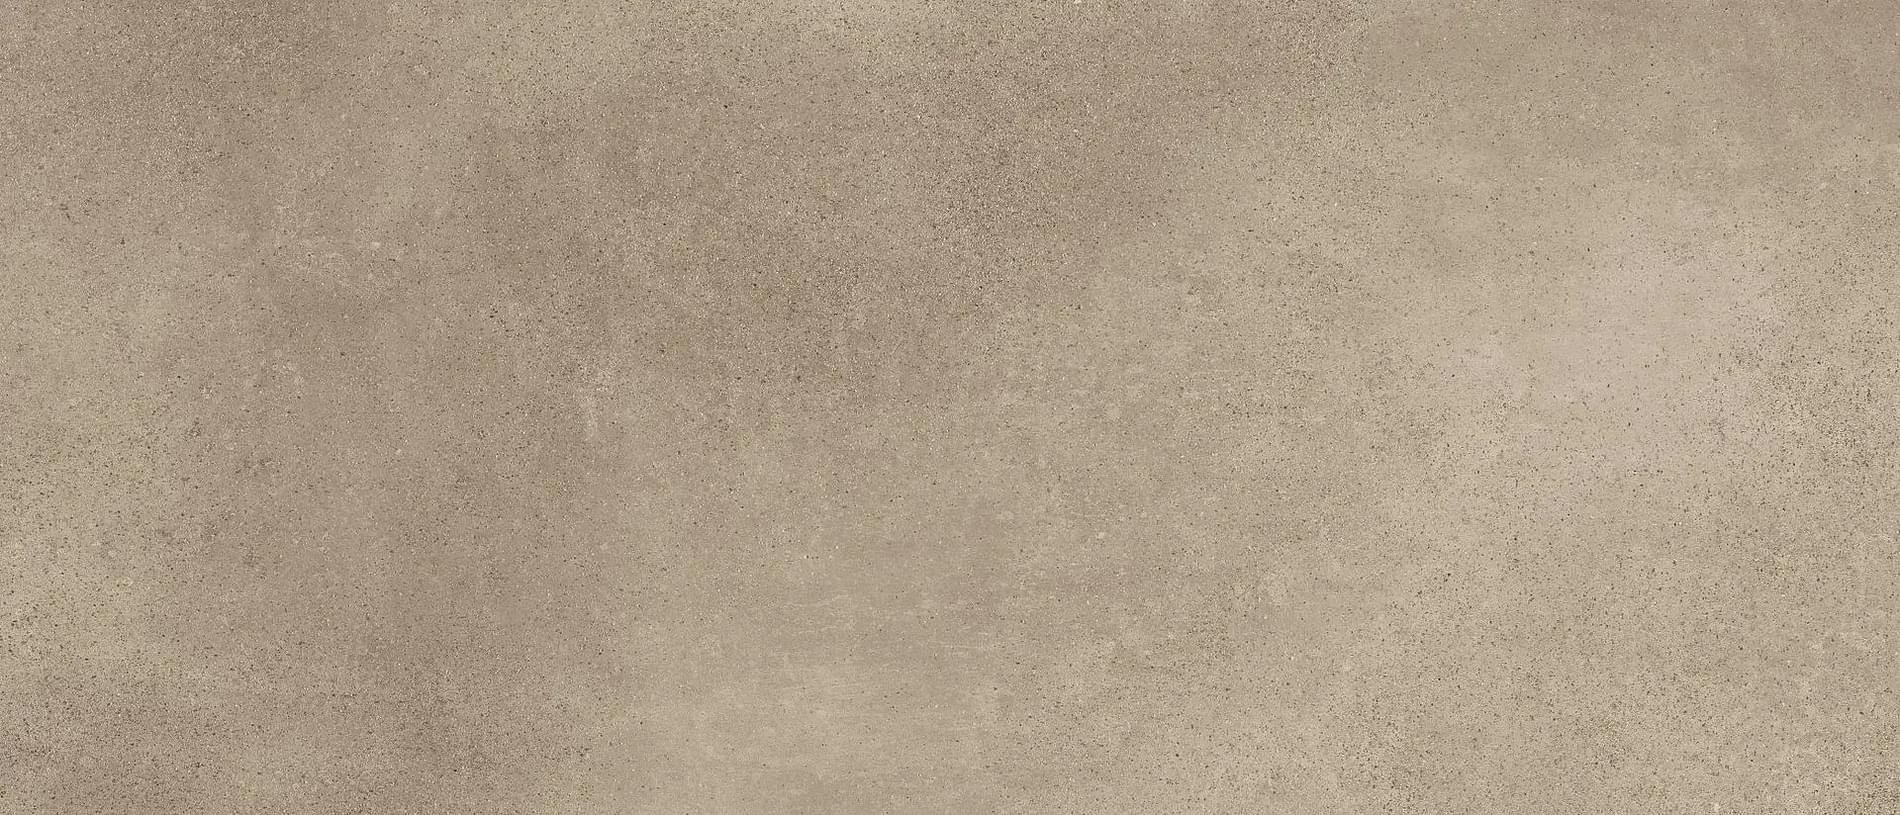 Terratinta Kos Sand On A Frame 6 Mm 120x280